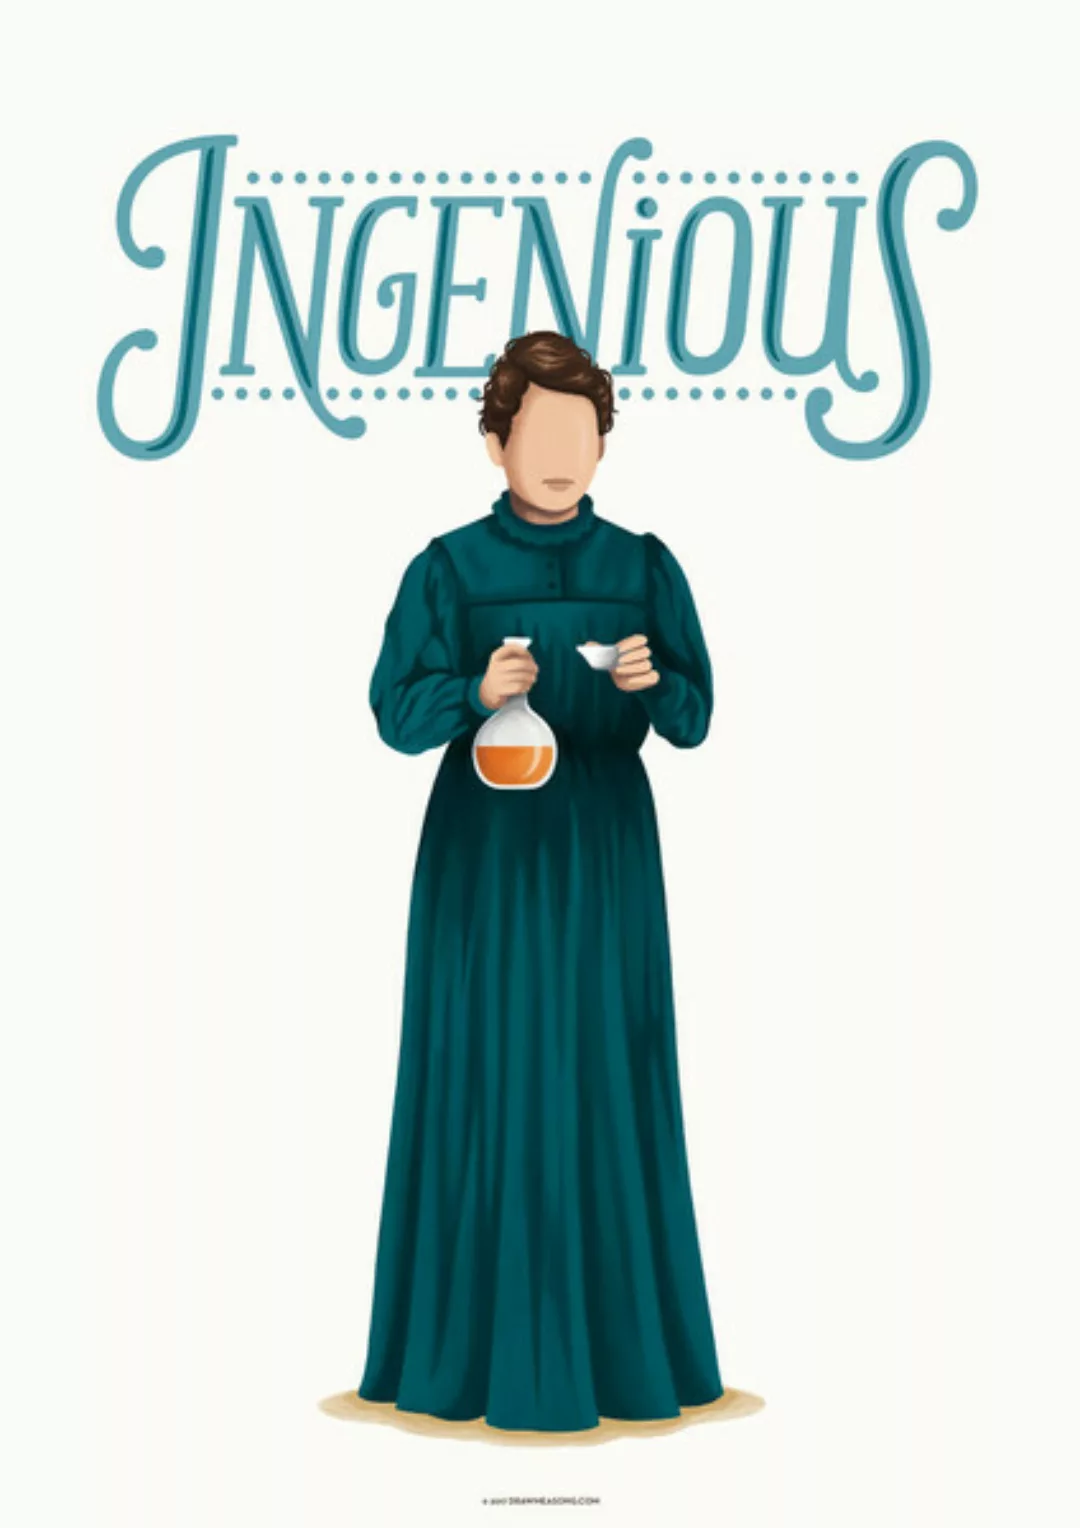 Poster / Leinwandbild - Marie Curie Ingenious günstig online kaufen